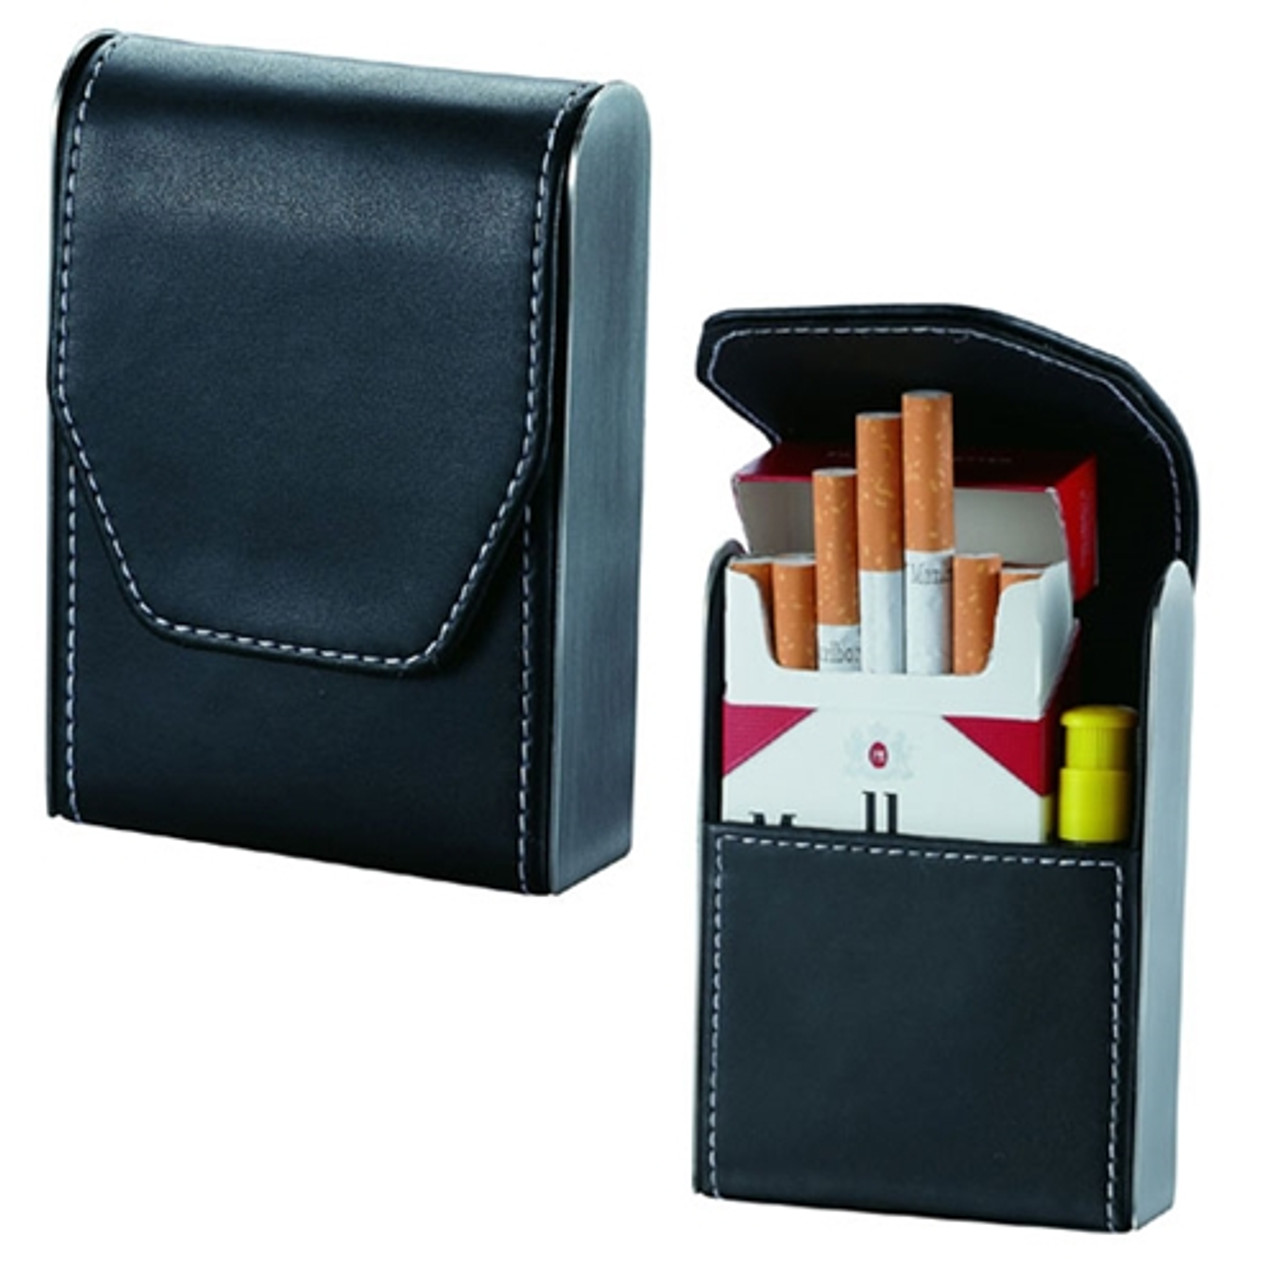 EL Mio Leather Cigarette Case (Black_103-4200-01) : Amazon.in: Home &  Kitchen